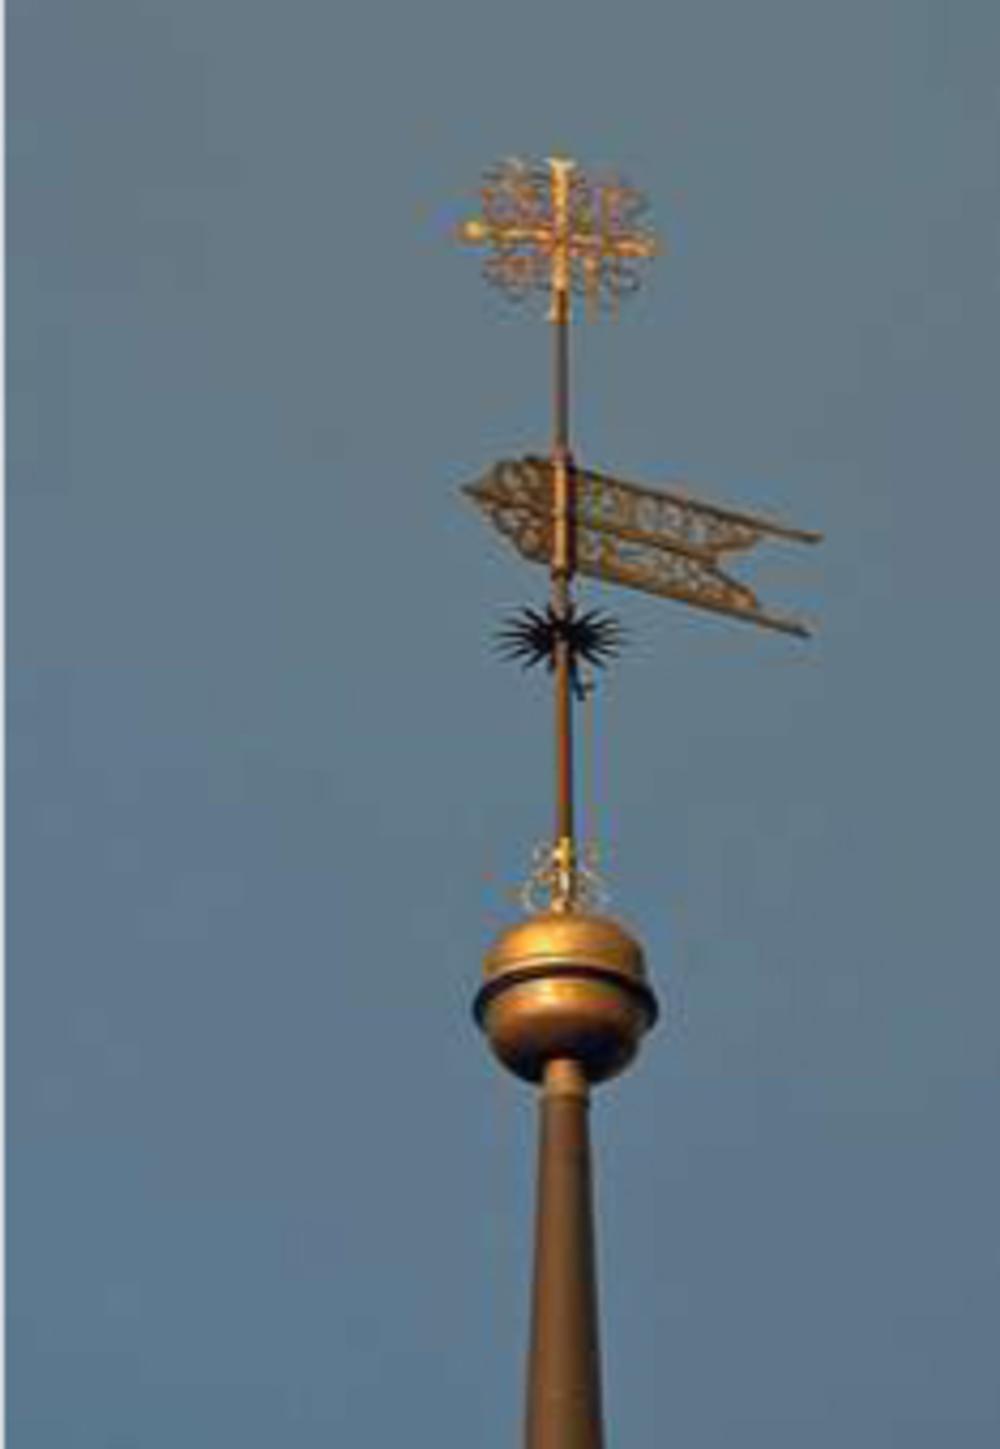 De windvaan van de Heilige Geestkerk in Tallinn, volgens Kross dé metafoor voor de houding en het gedrag van de notabelen uit Tallinn.